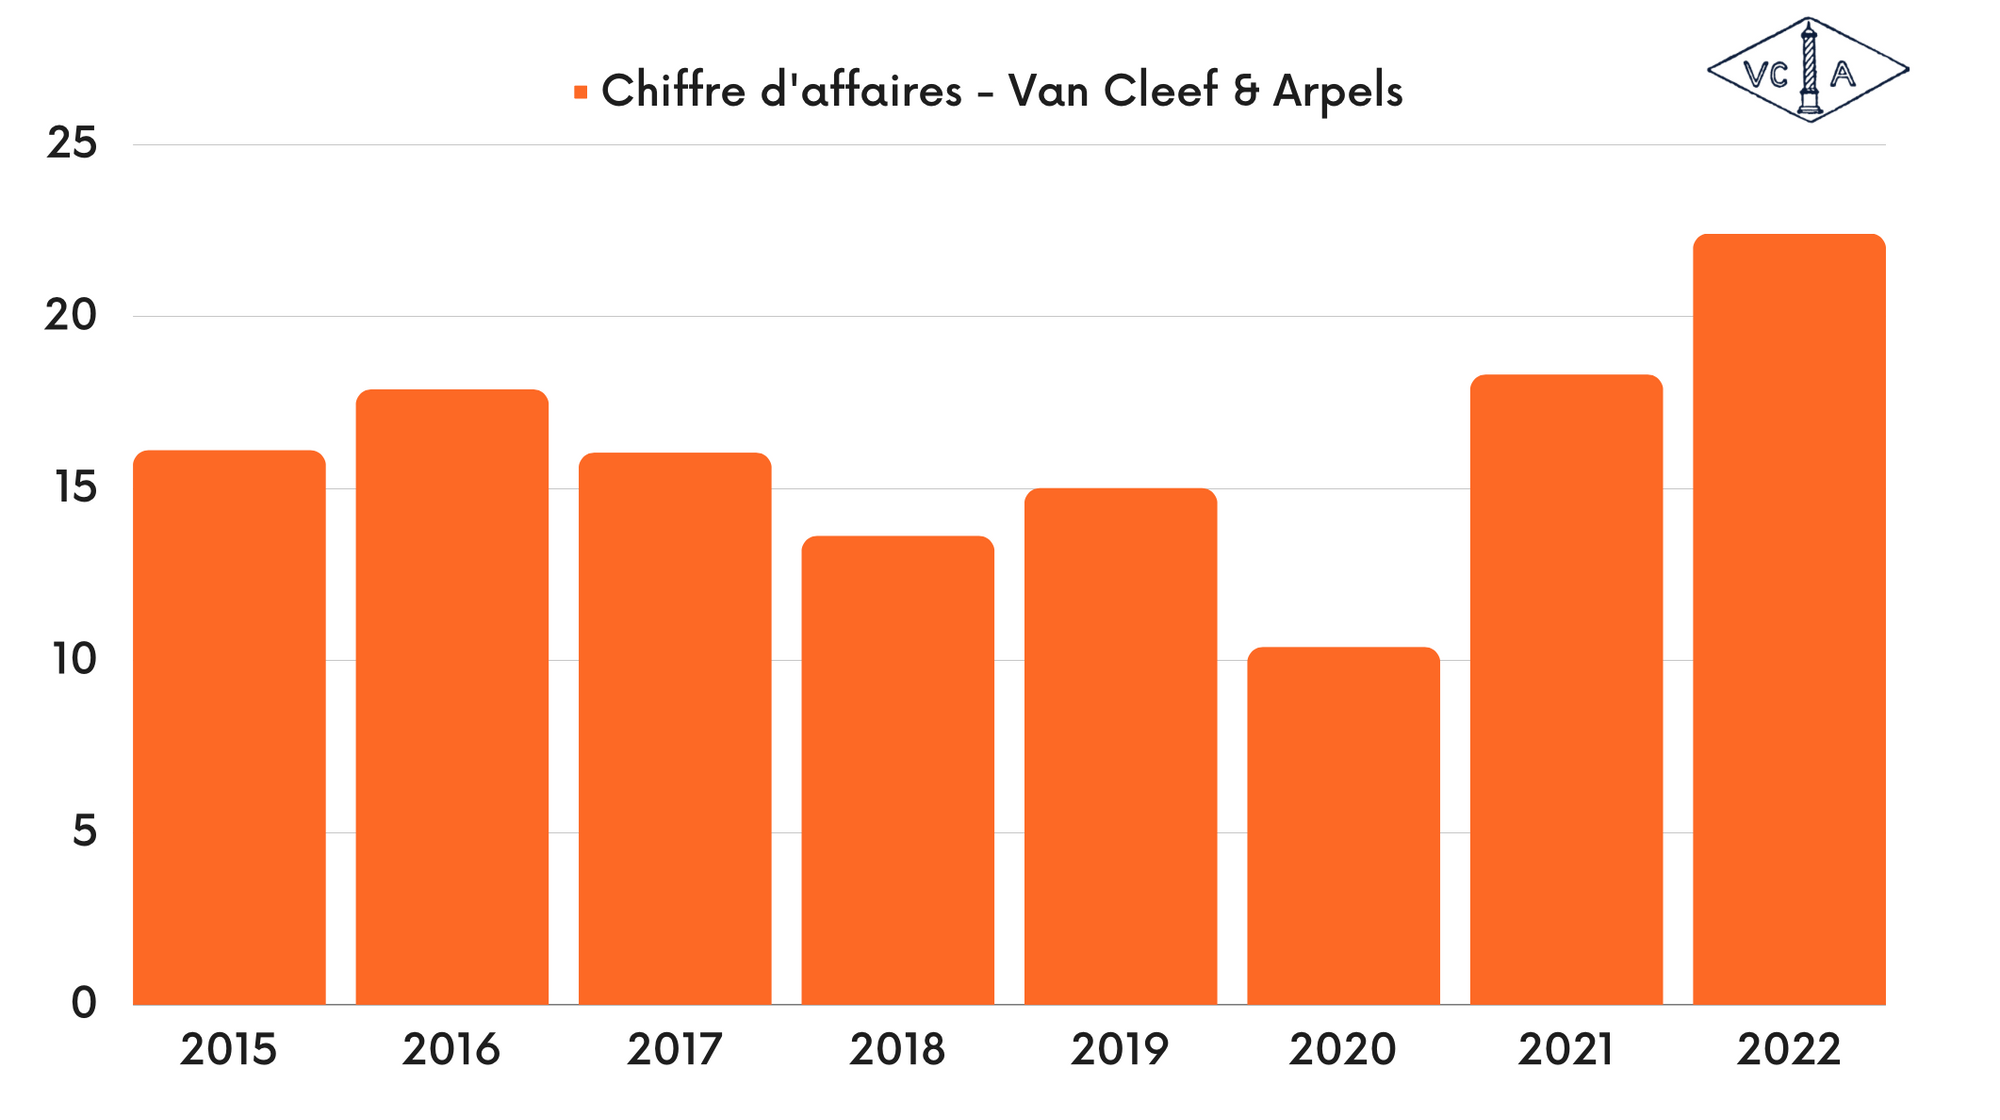 Van Cleef & Arpels - Chiffre d'affaires - Interparfums